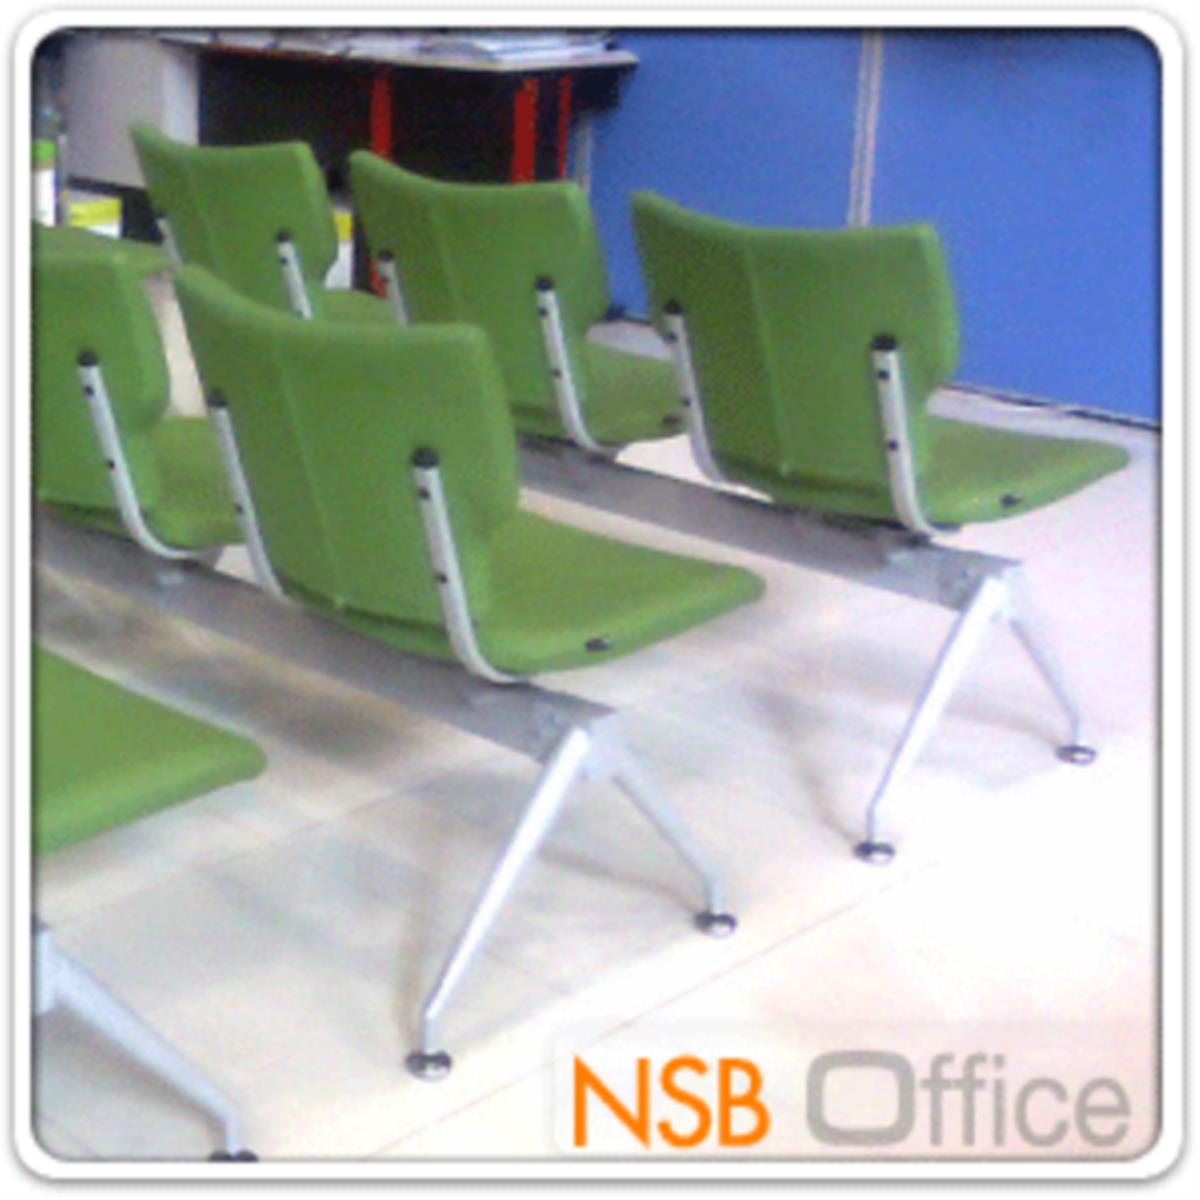 เก้าอี้นั่งคอย รุ่น NSB-538S 2 ,3 ,4 ที่นั่ง ขนาด 100W ,150W ,202W cm. ขาเหล็ก